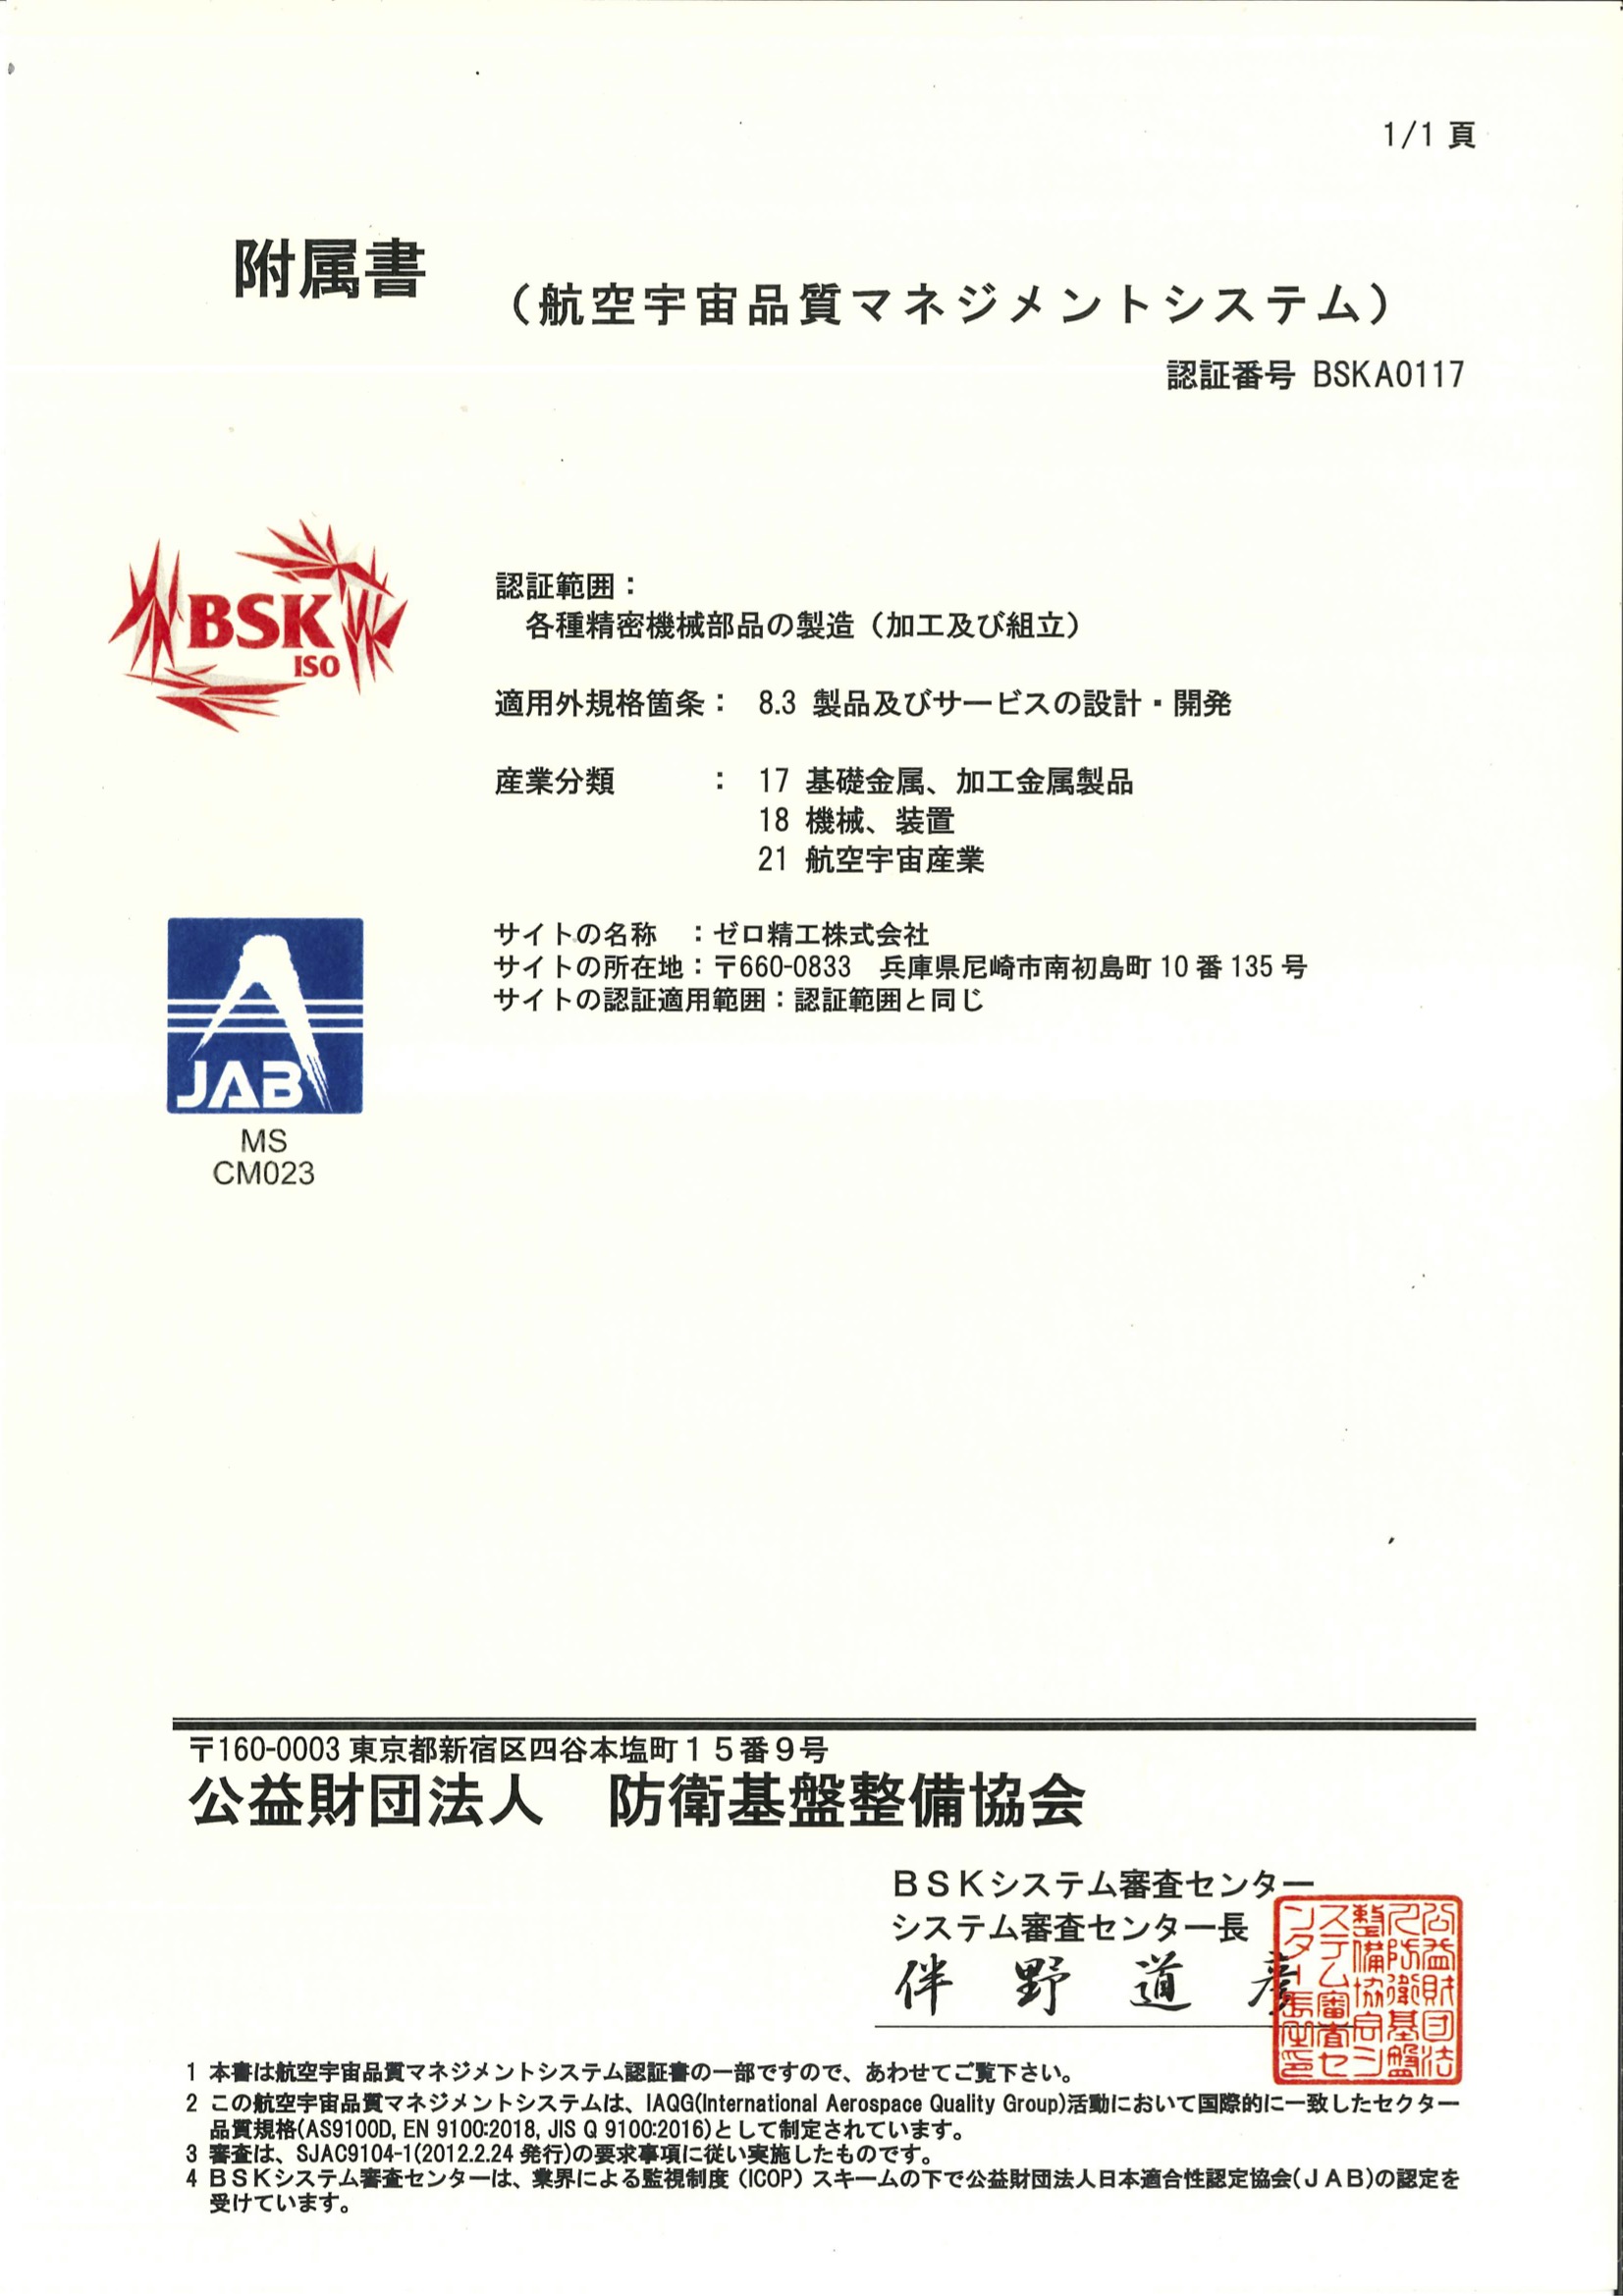 JIS Q 9100（航空・宇宙・防衛品質マネジメントシステム）認証書